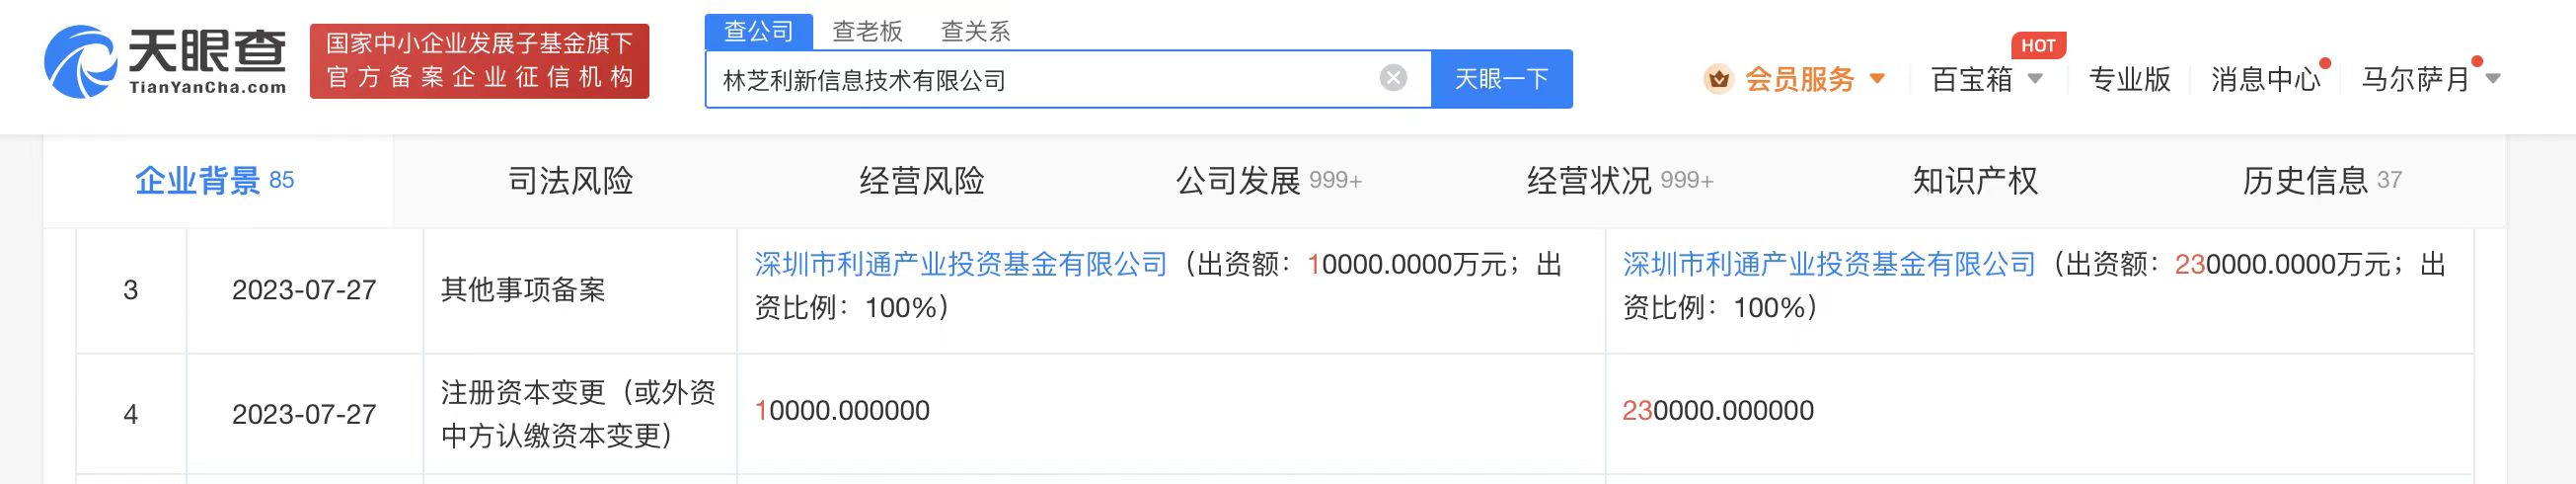 騰訊旗下林芝利新增資至23億